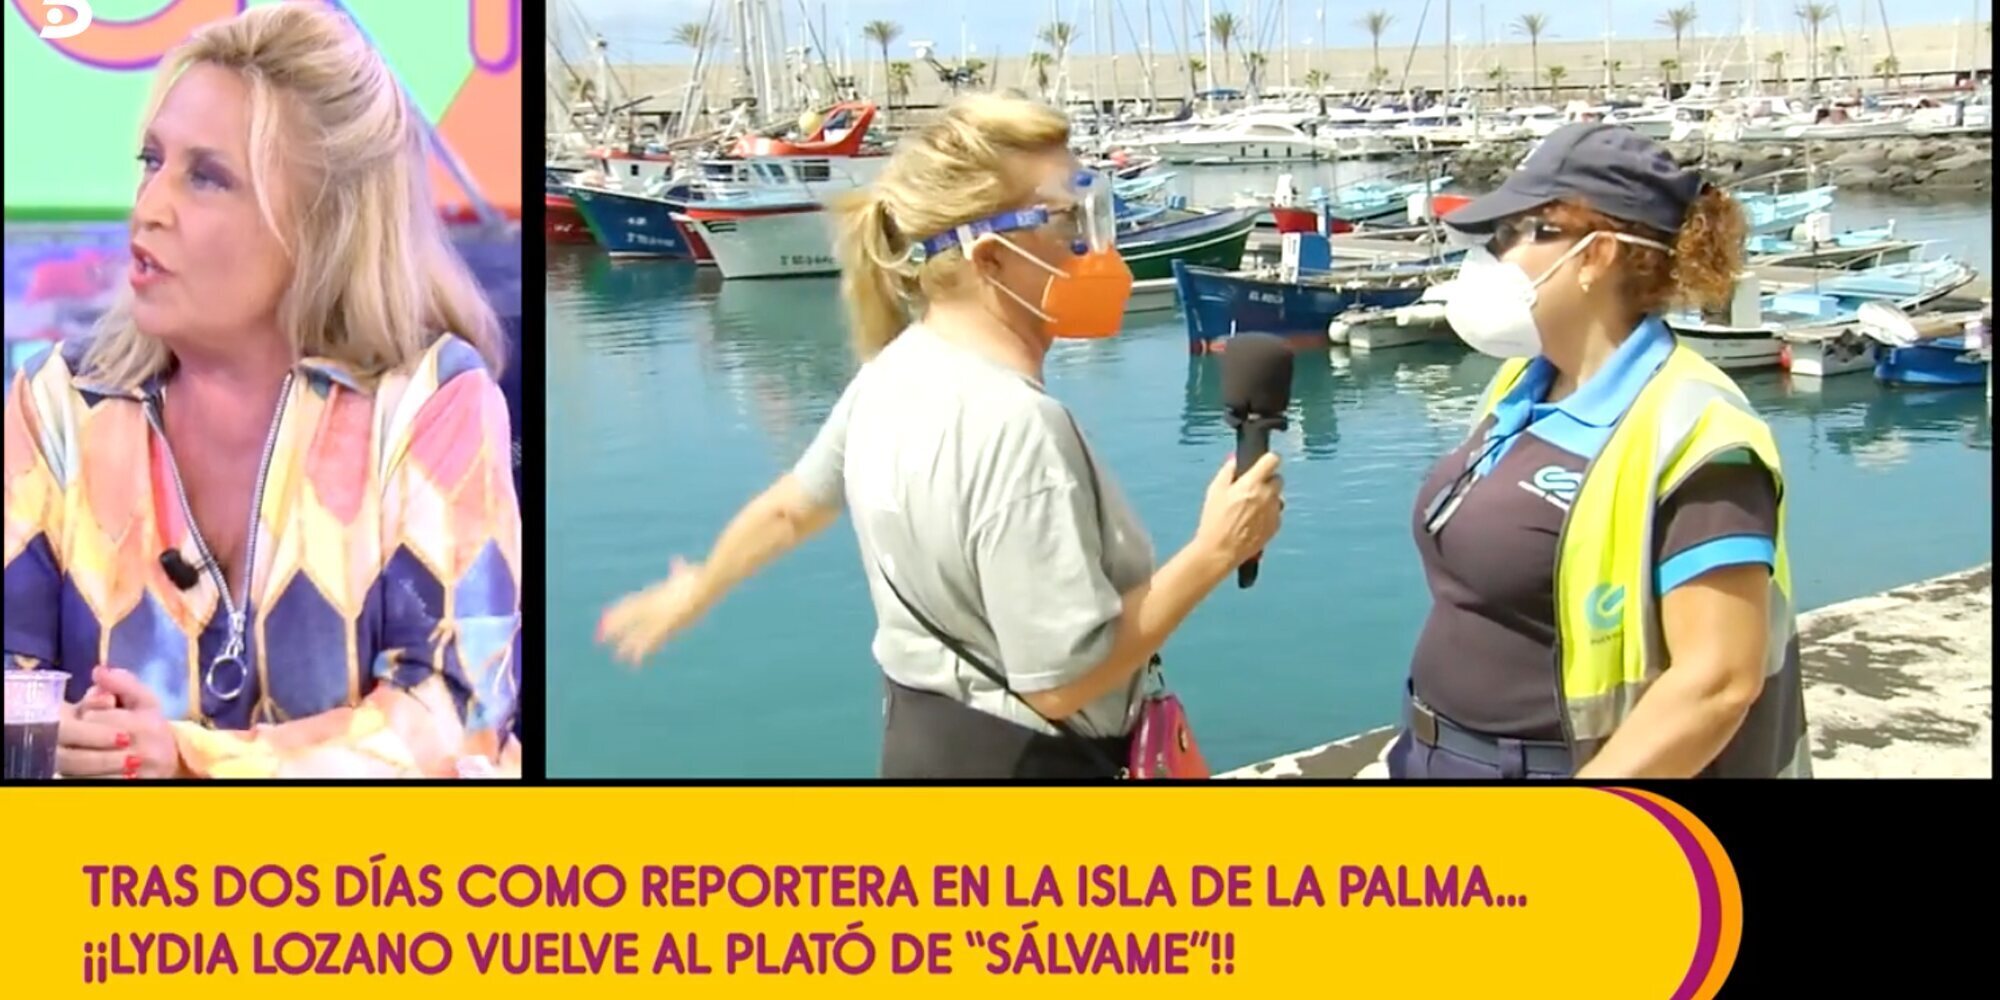 El alegato de Carlota Corredera a favor de Lydia Lozano por su cobertura en La Palma para 'Sálvame'